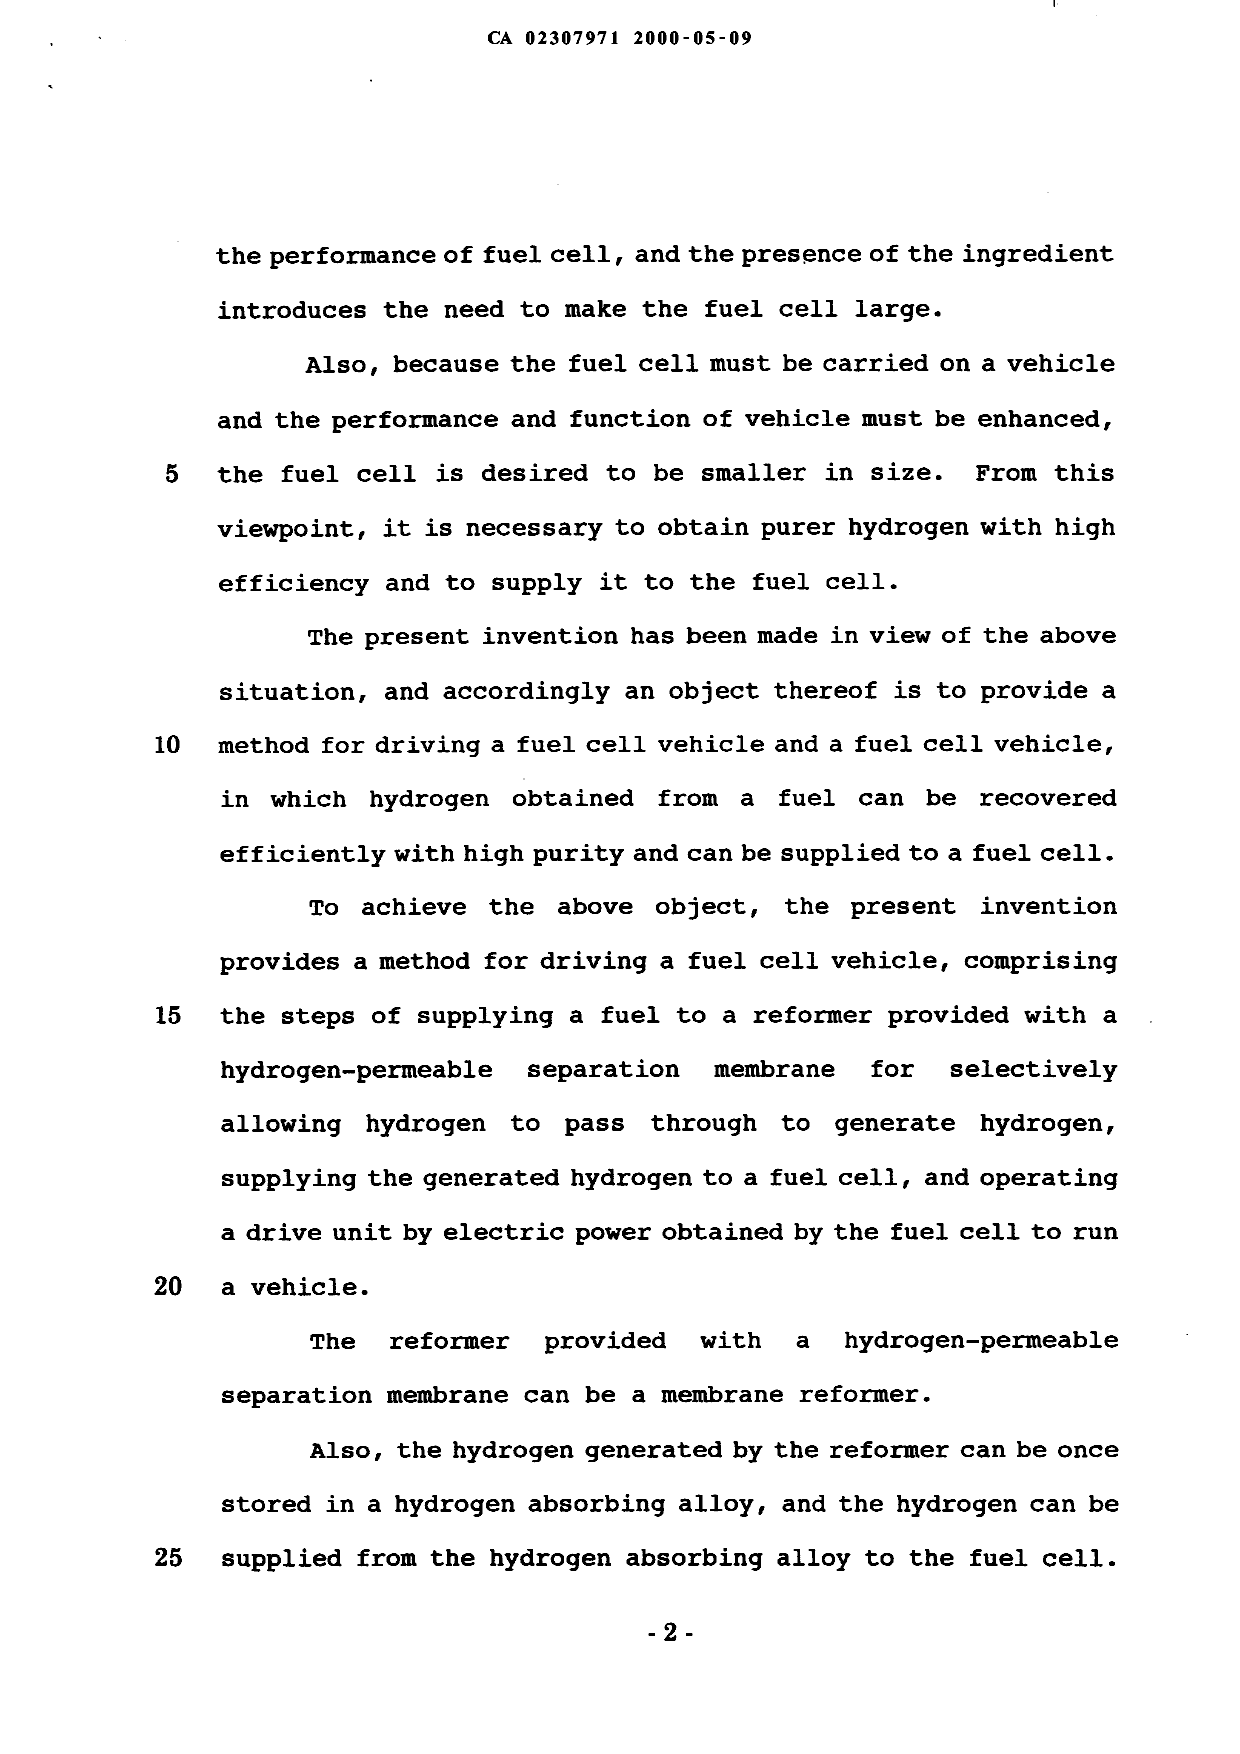 Canadian Patent Document 2307971. Description 19991209. Image 2 of 15